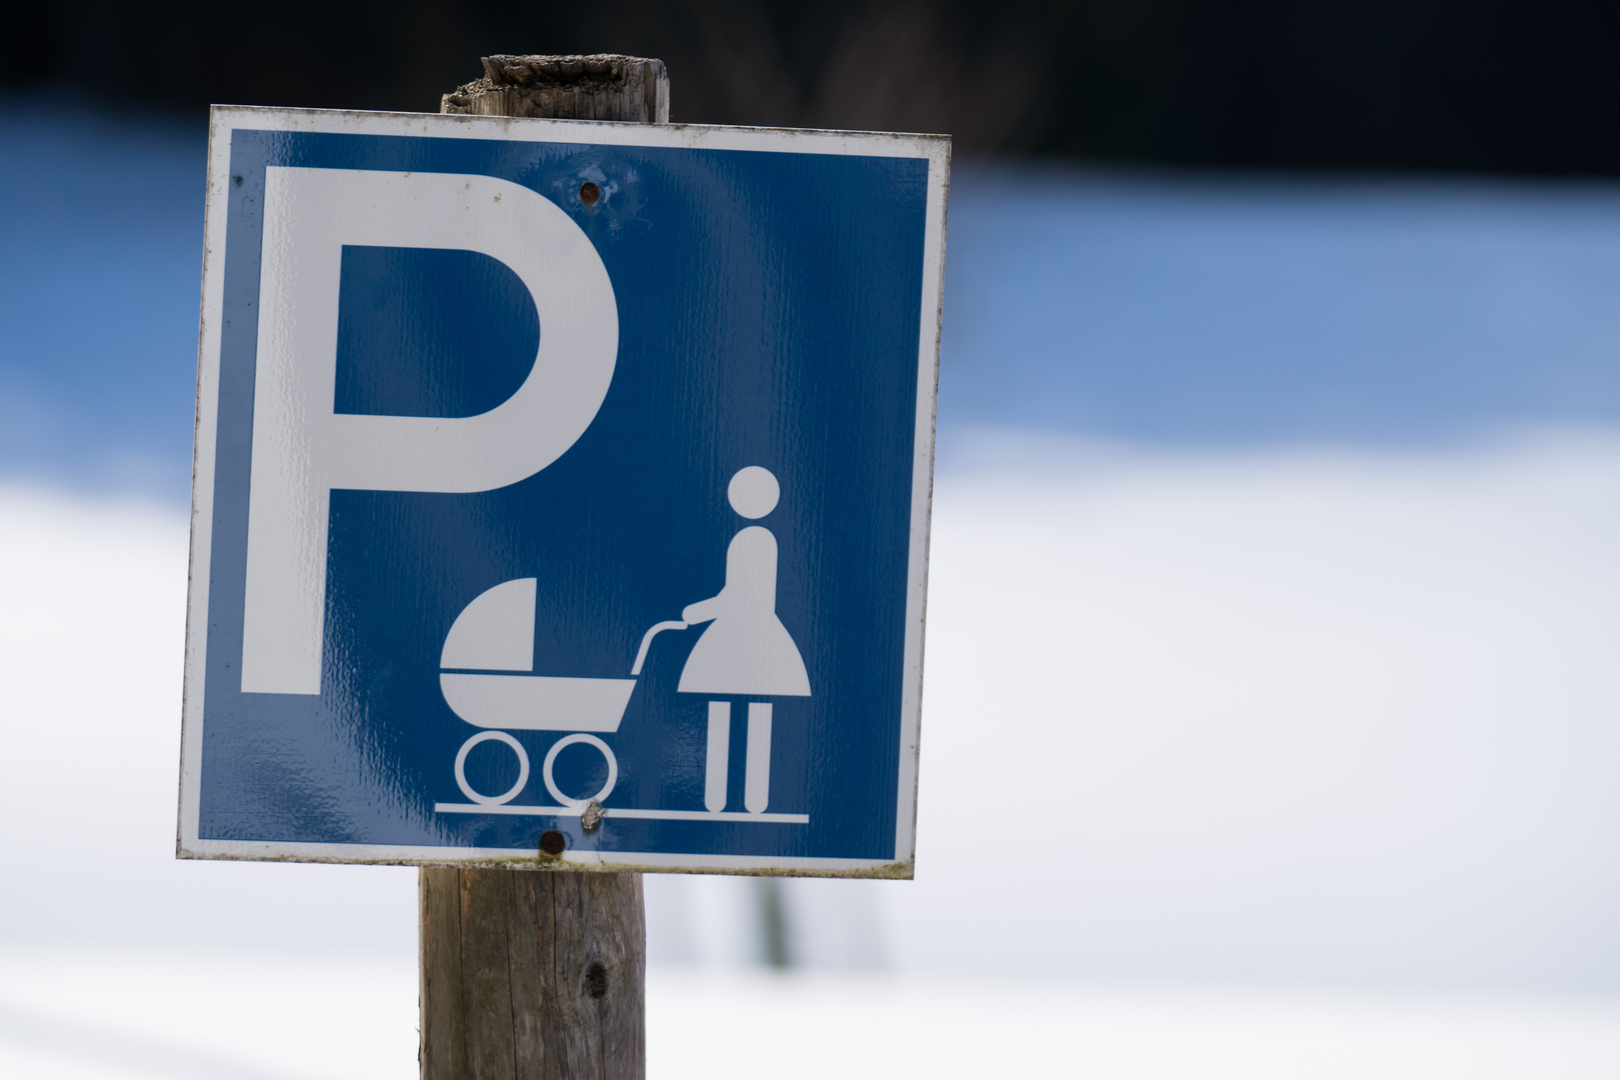 Frauenparkplatz im Schnee